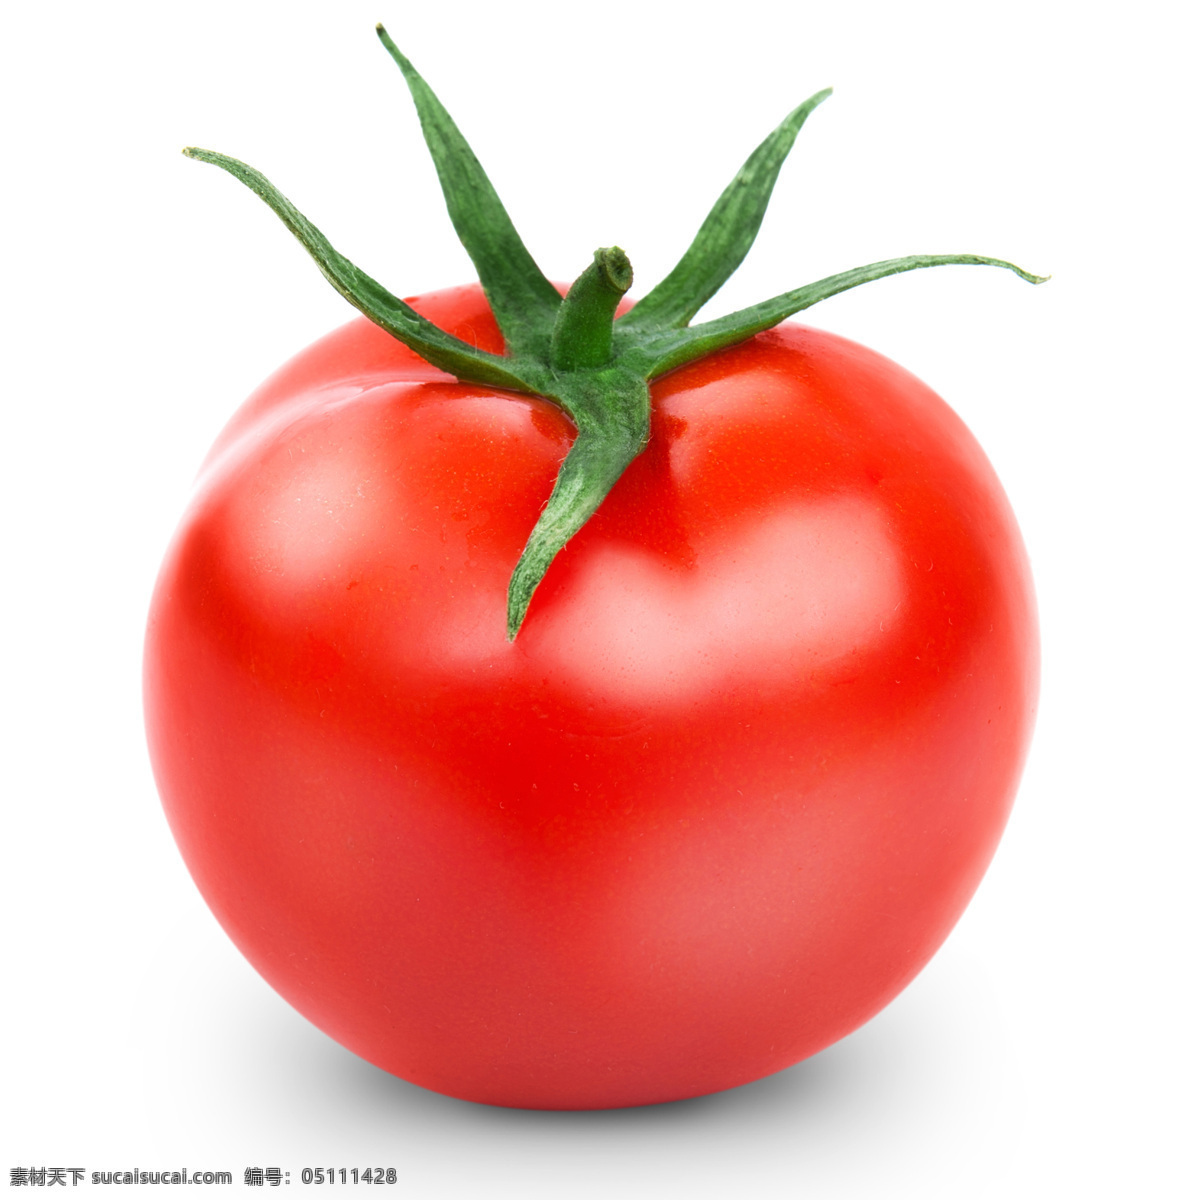 西红柿图片 白色 成分 多汁 番茄 番茄味 隔离 红色 健康 美味 目标 切片 餐饮美食 传统美食